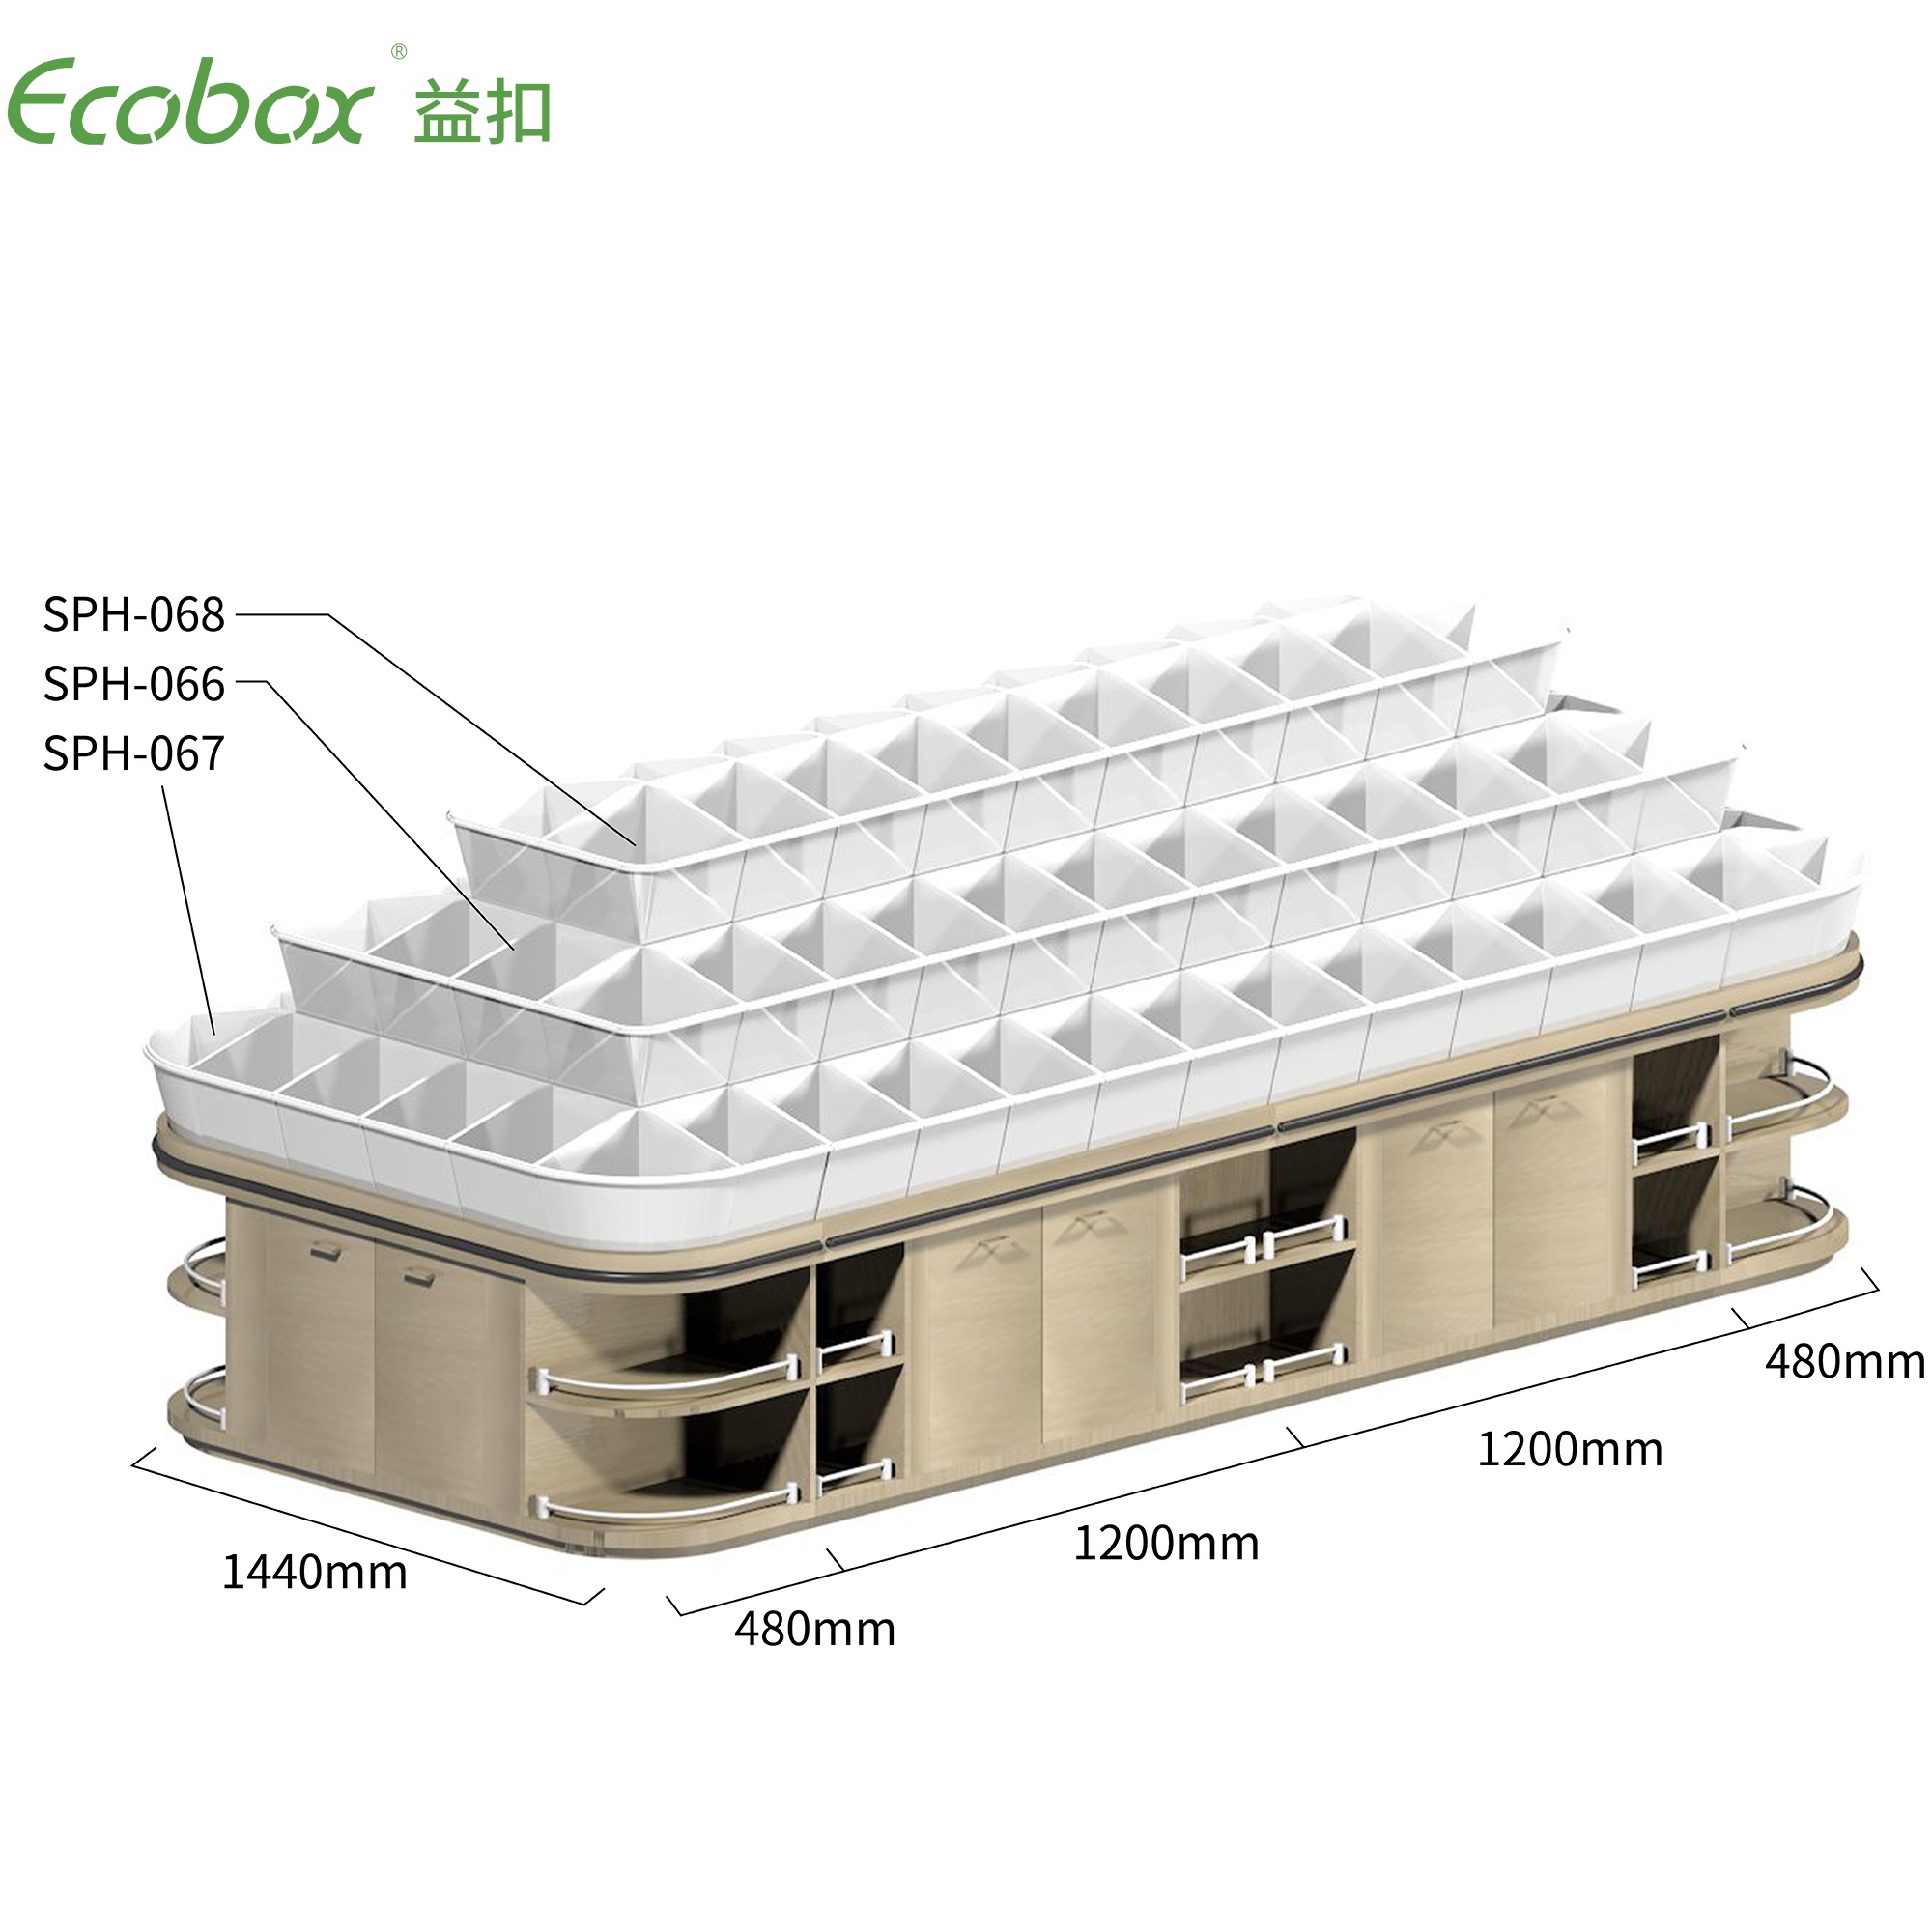 Exhibidores de alimentos a granel de supermercado Ecobox G009 con contenedores de supermercado Ecobox